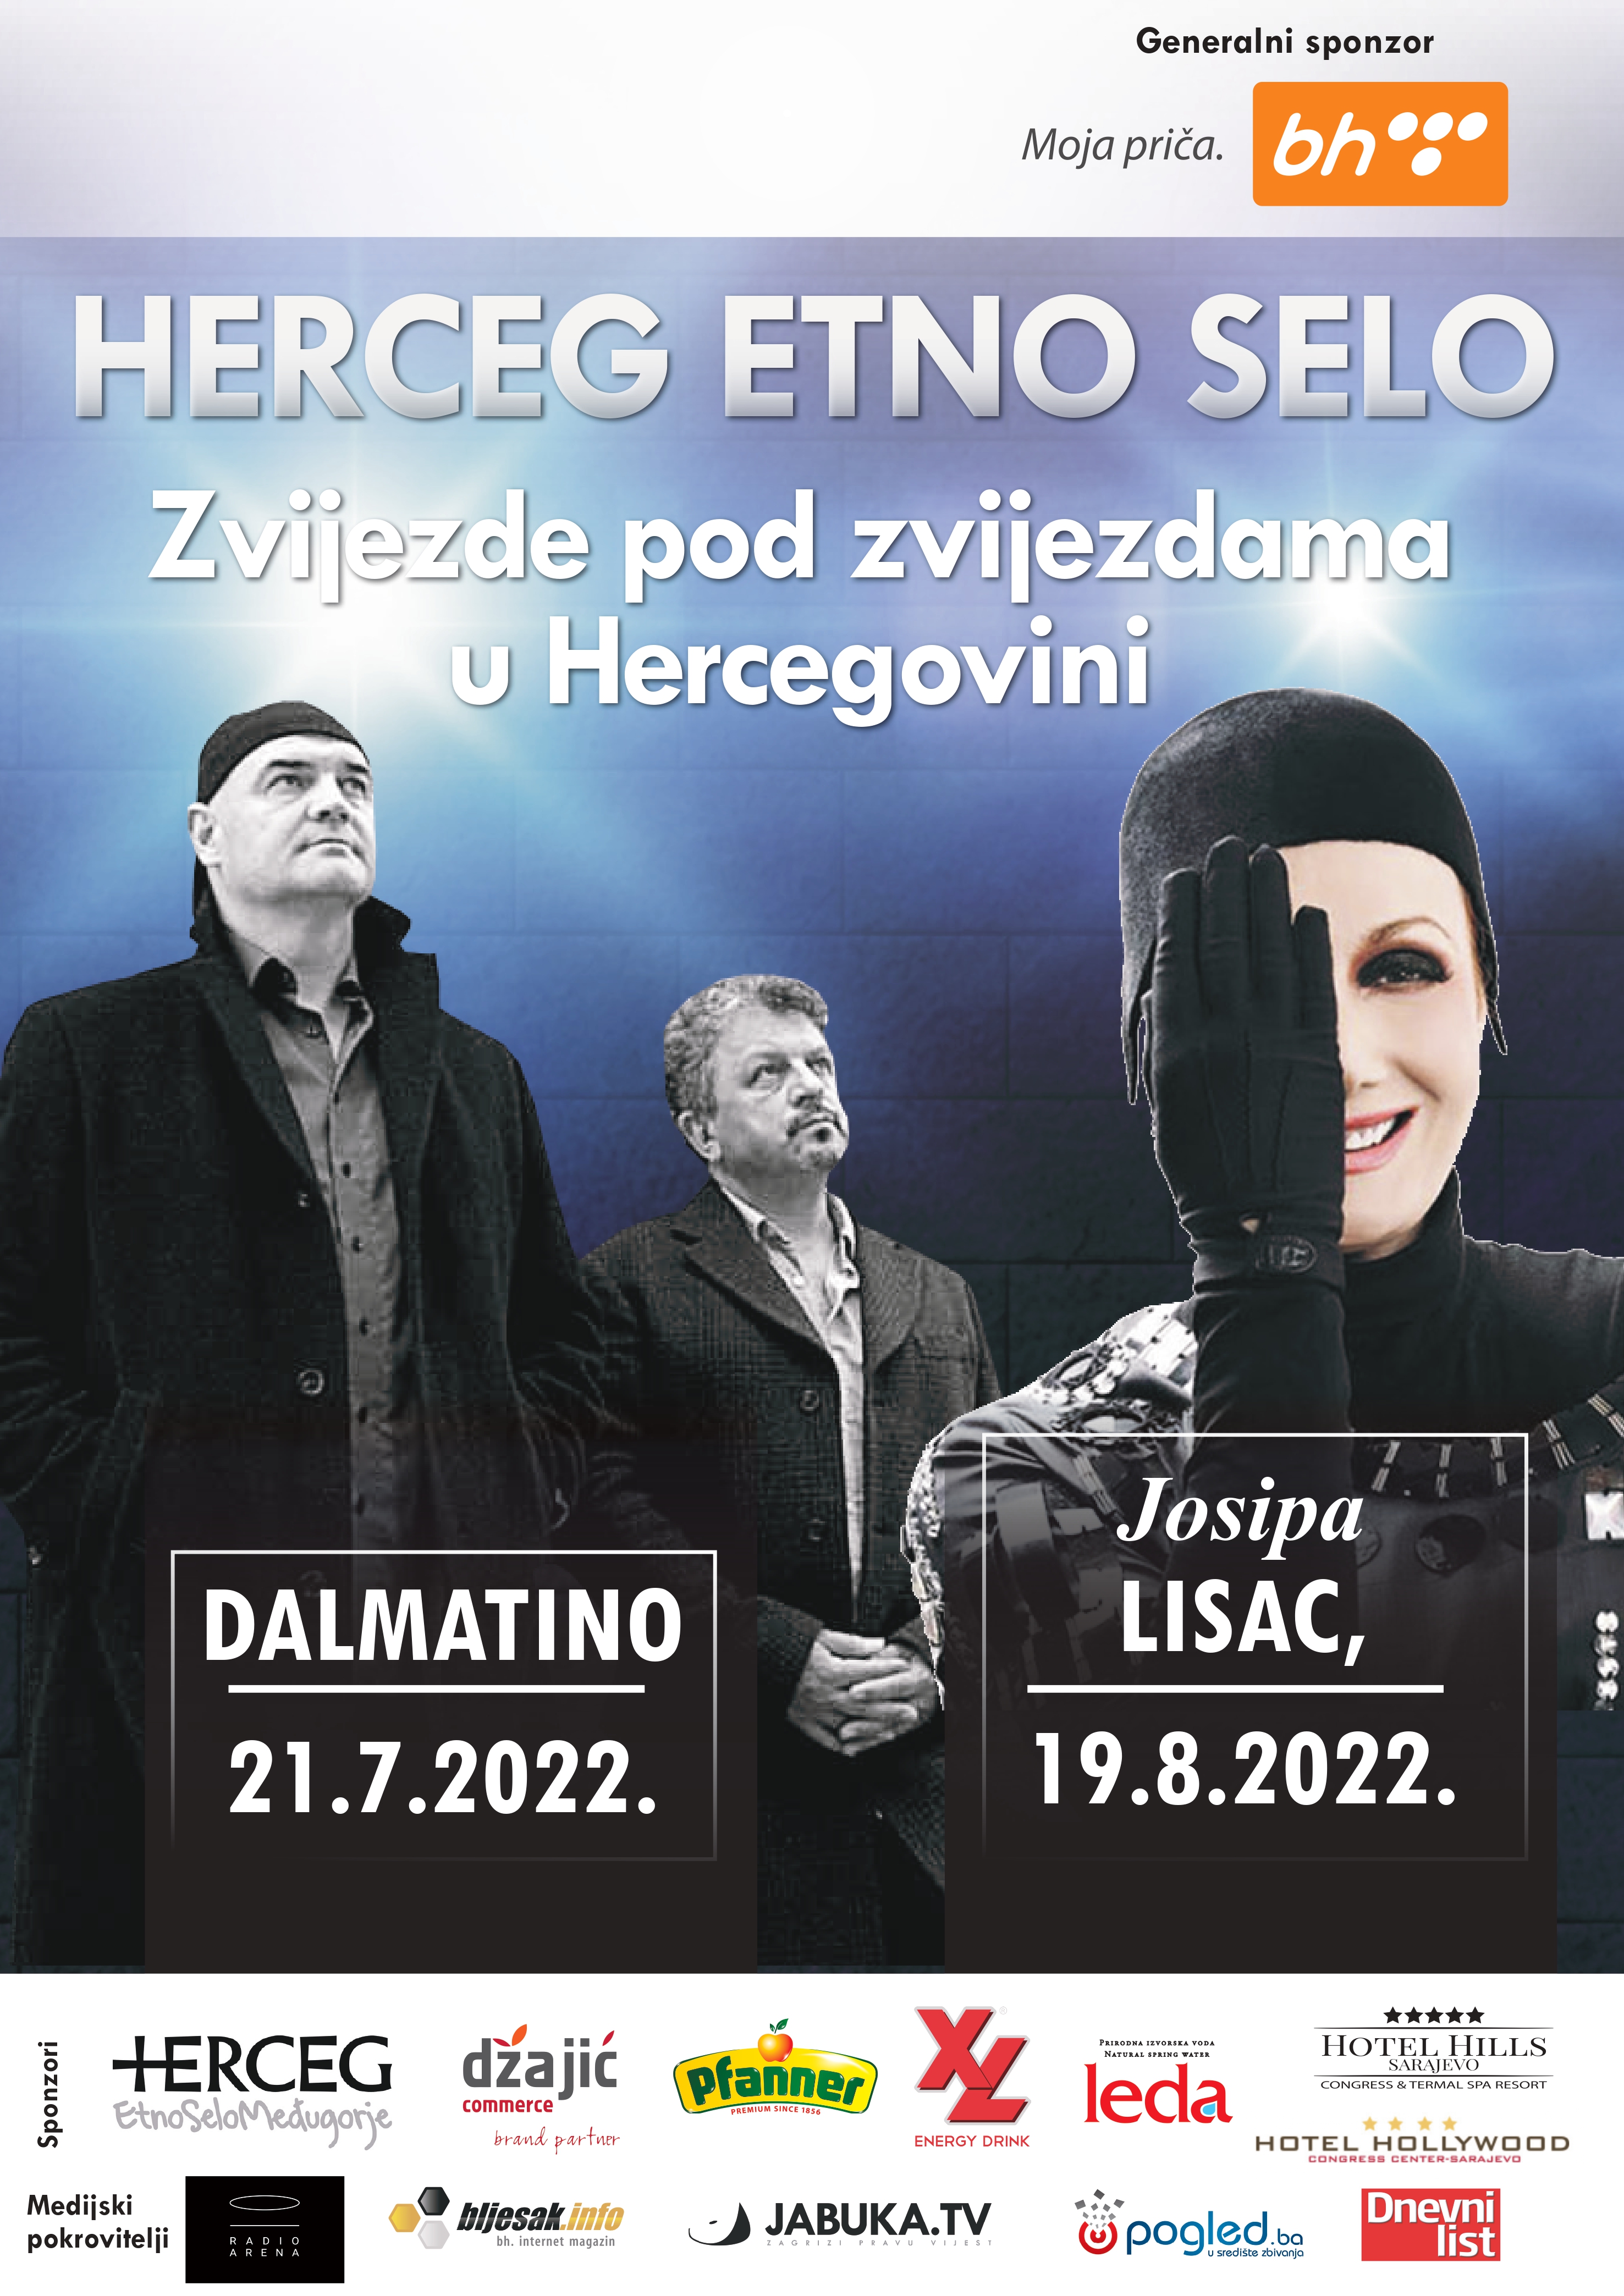 Dalmatino rasprodao koncert u Međugorju, u prodaji dostupne još ulaznice za Josipu Lisac